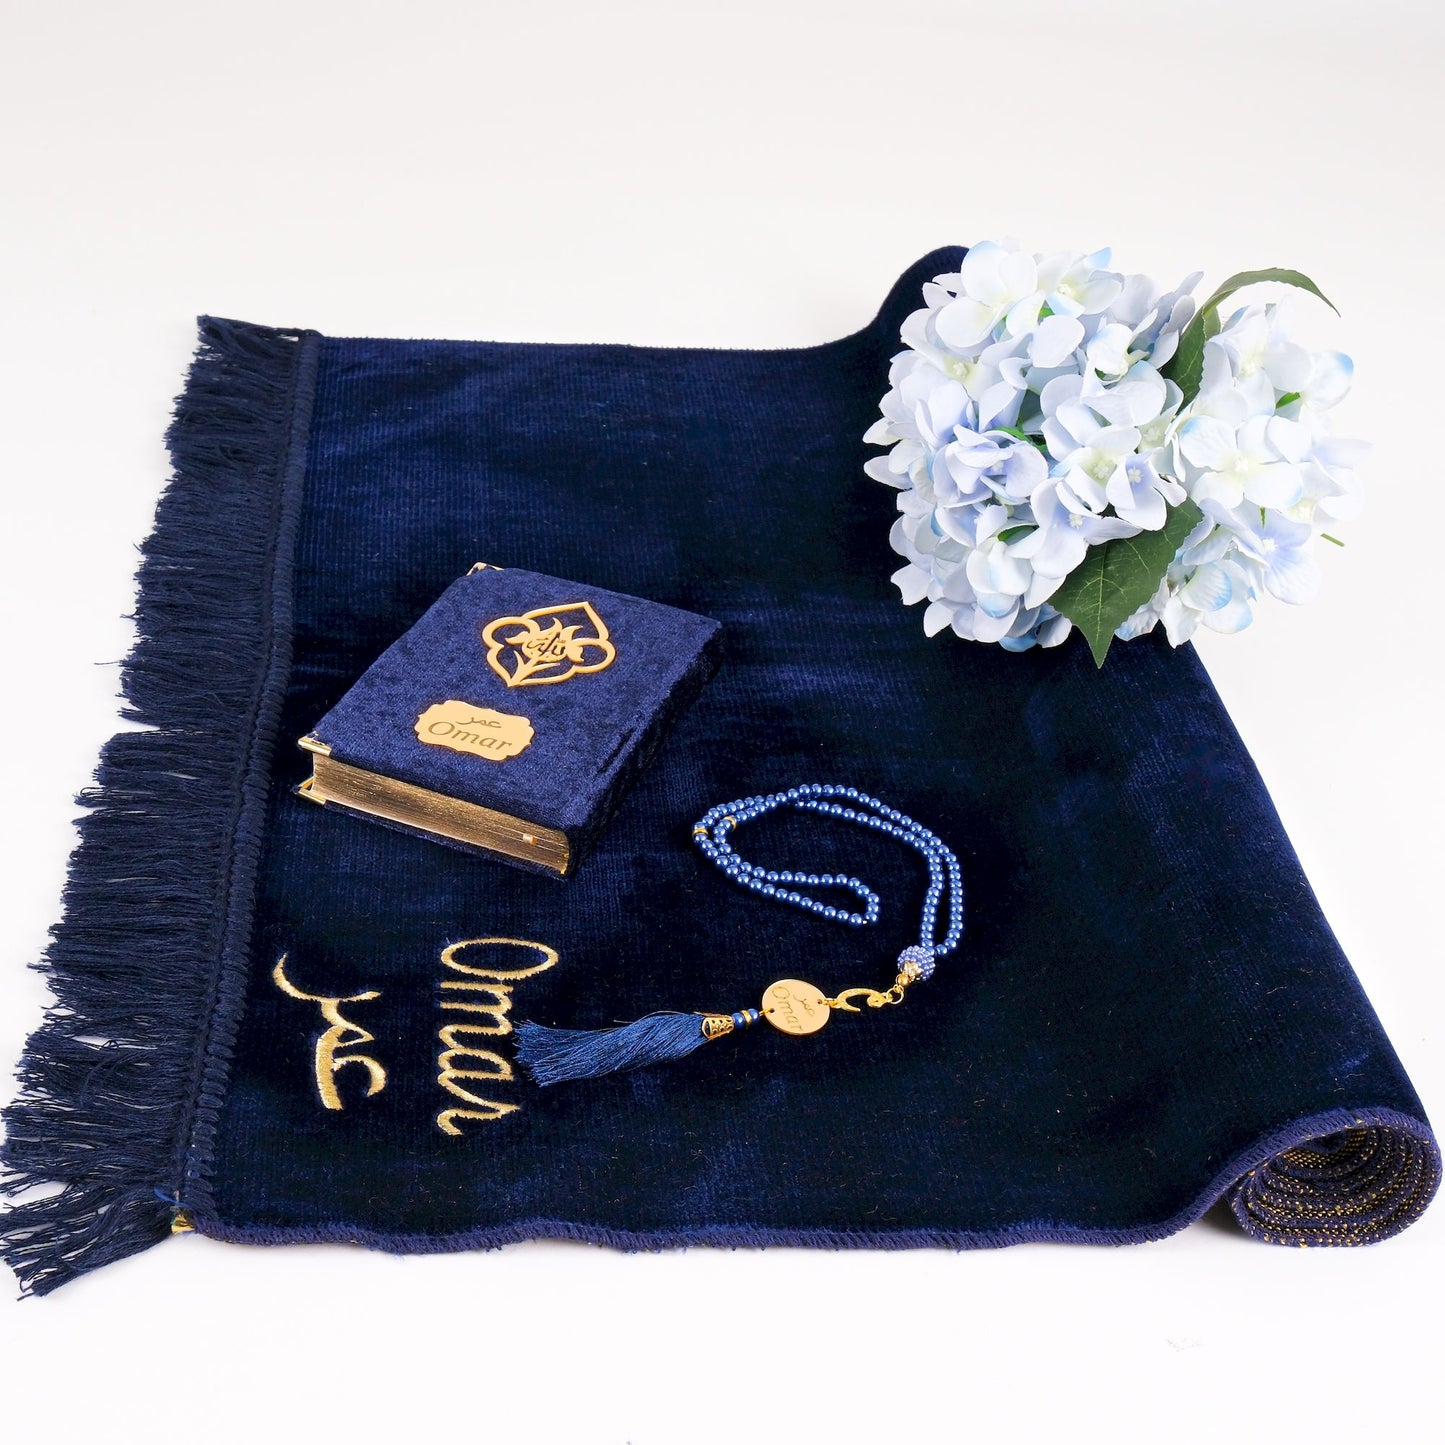 Personalized Elegant Velvet Prayer Mat Quran Tasbeeh Islamic Gift Set